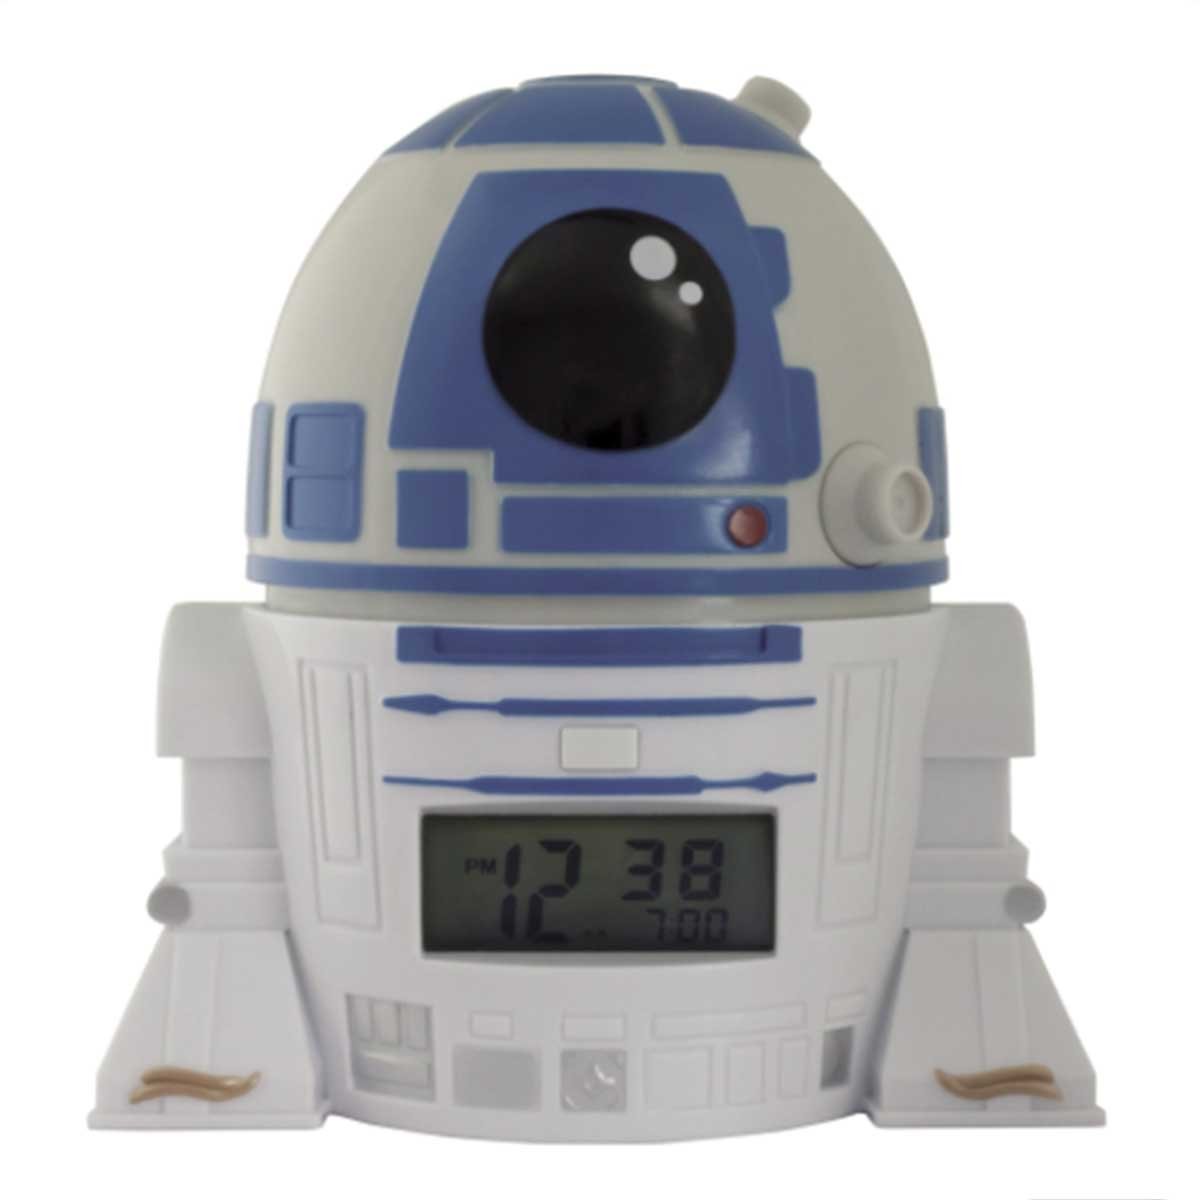 Despertador Infantil Bulb Botz Star Wars R2D2 5.5&quot; Tall